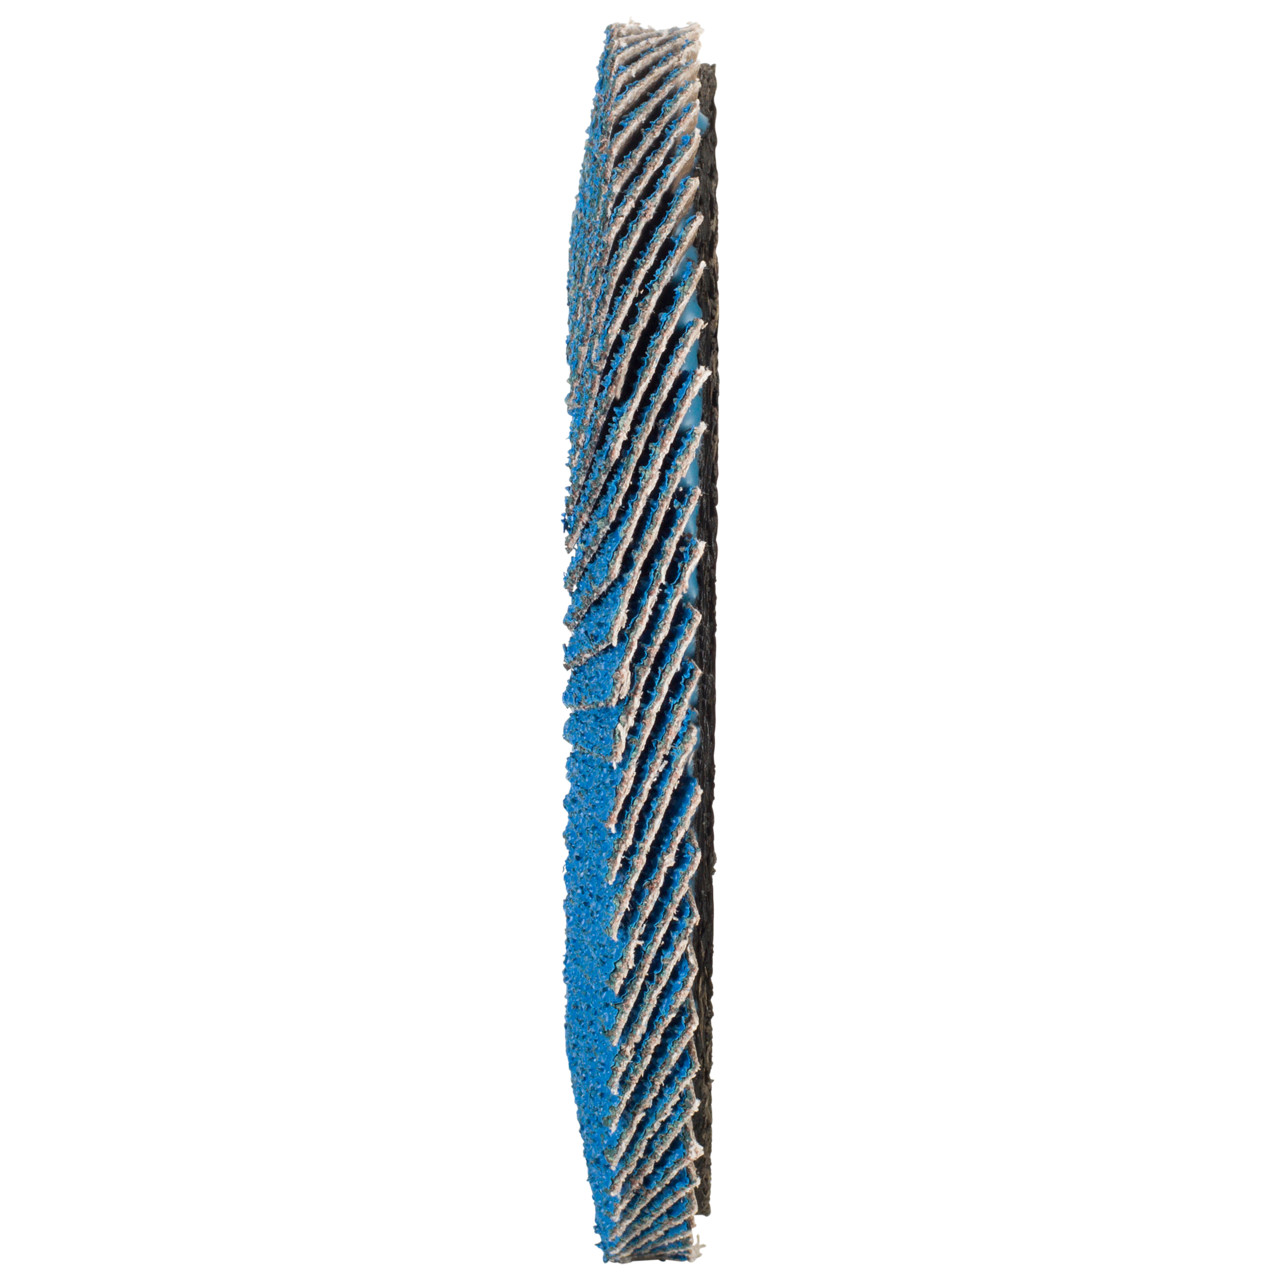 TYROLIT Fächerscheibe DxH 125x22,2 FASTCUT für Stahl & Edelstahl, P40, Form: 28N - gerade Ausführung (Kunststoffträgerkörper), Art. 458034